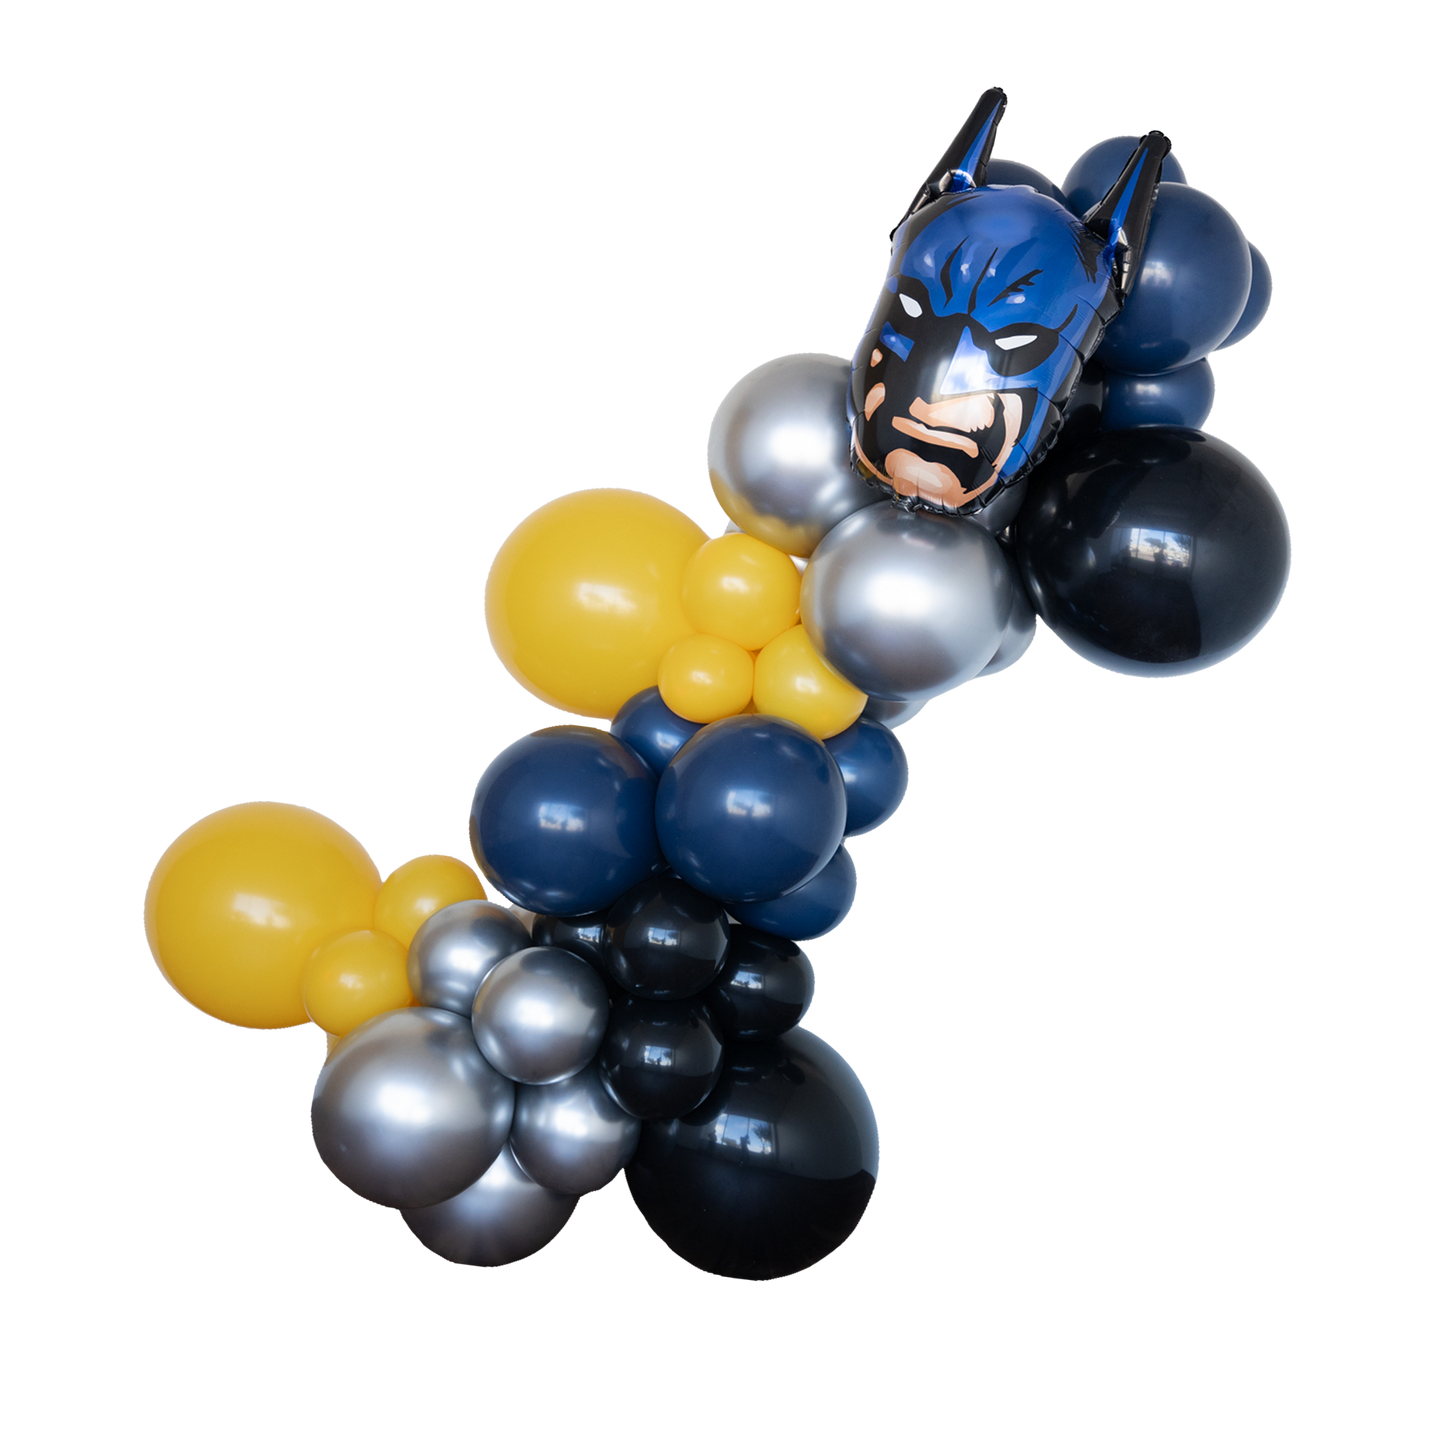 Batman - Arkham Asylum  Balloons Party Supplies Mylars Party Rentals Whole  Sale Balloons